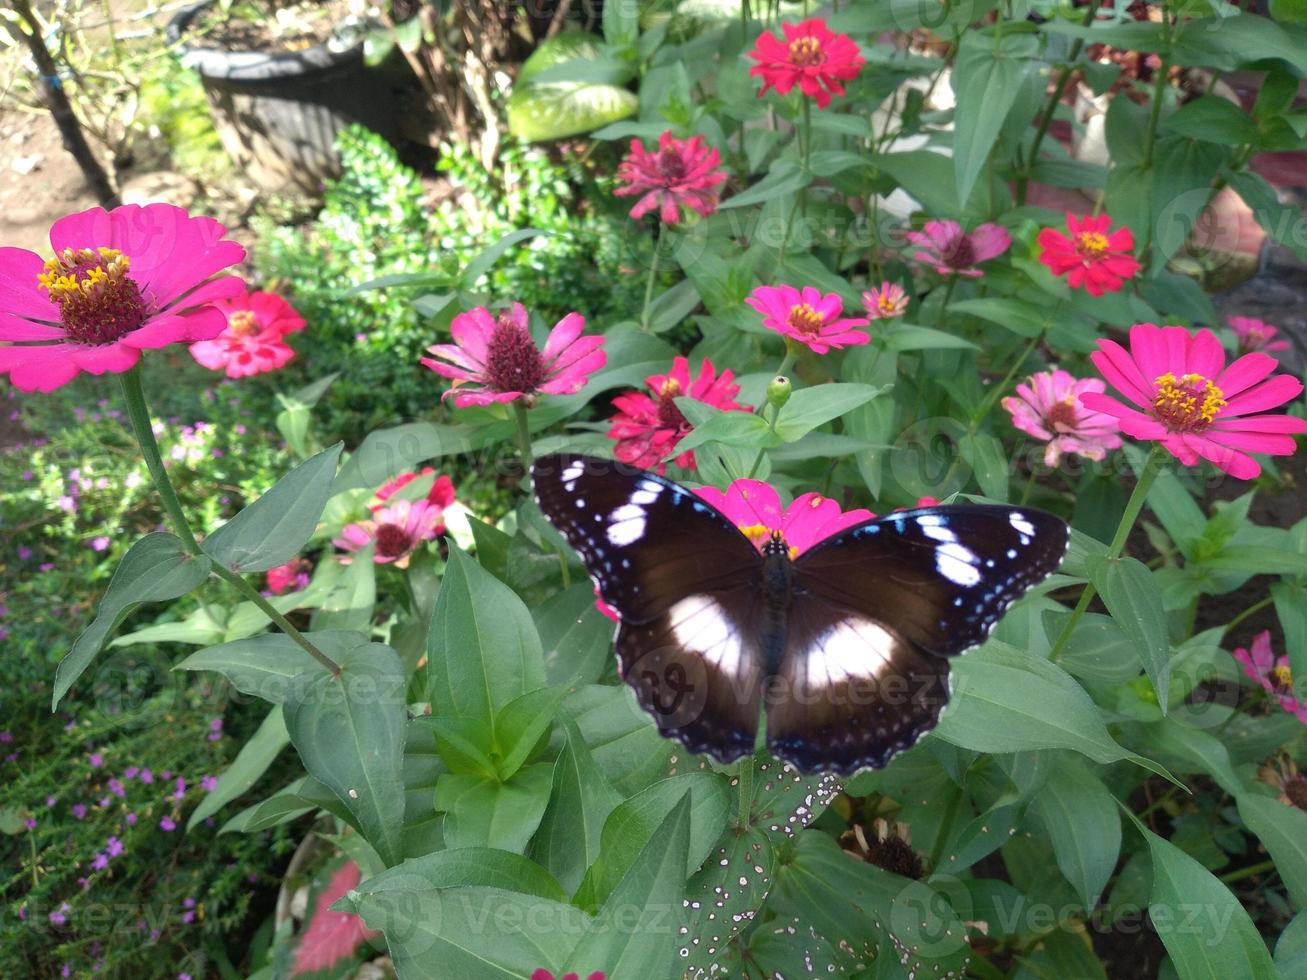 j'ai pris une photo d'un papillon perché sur une fleur dans un jardin fleuri. le motif papillon est très joli